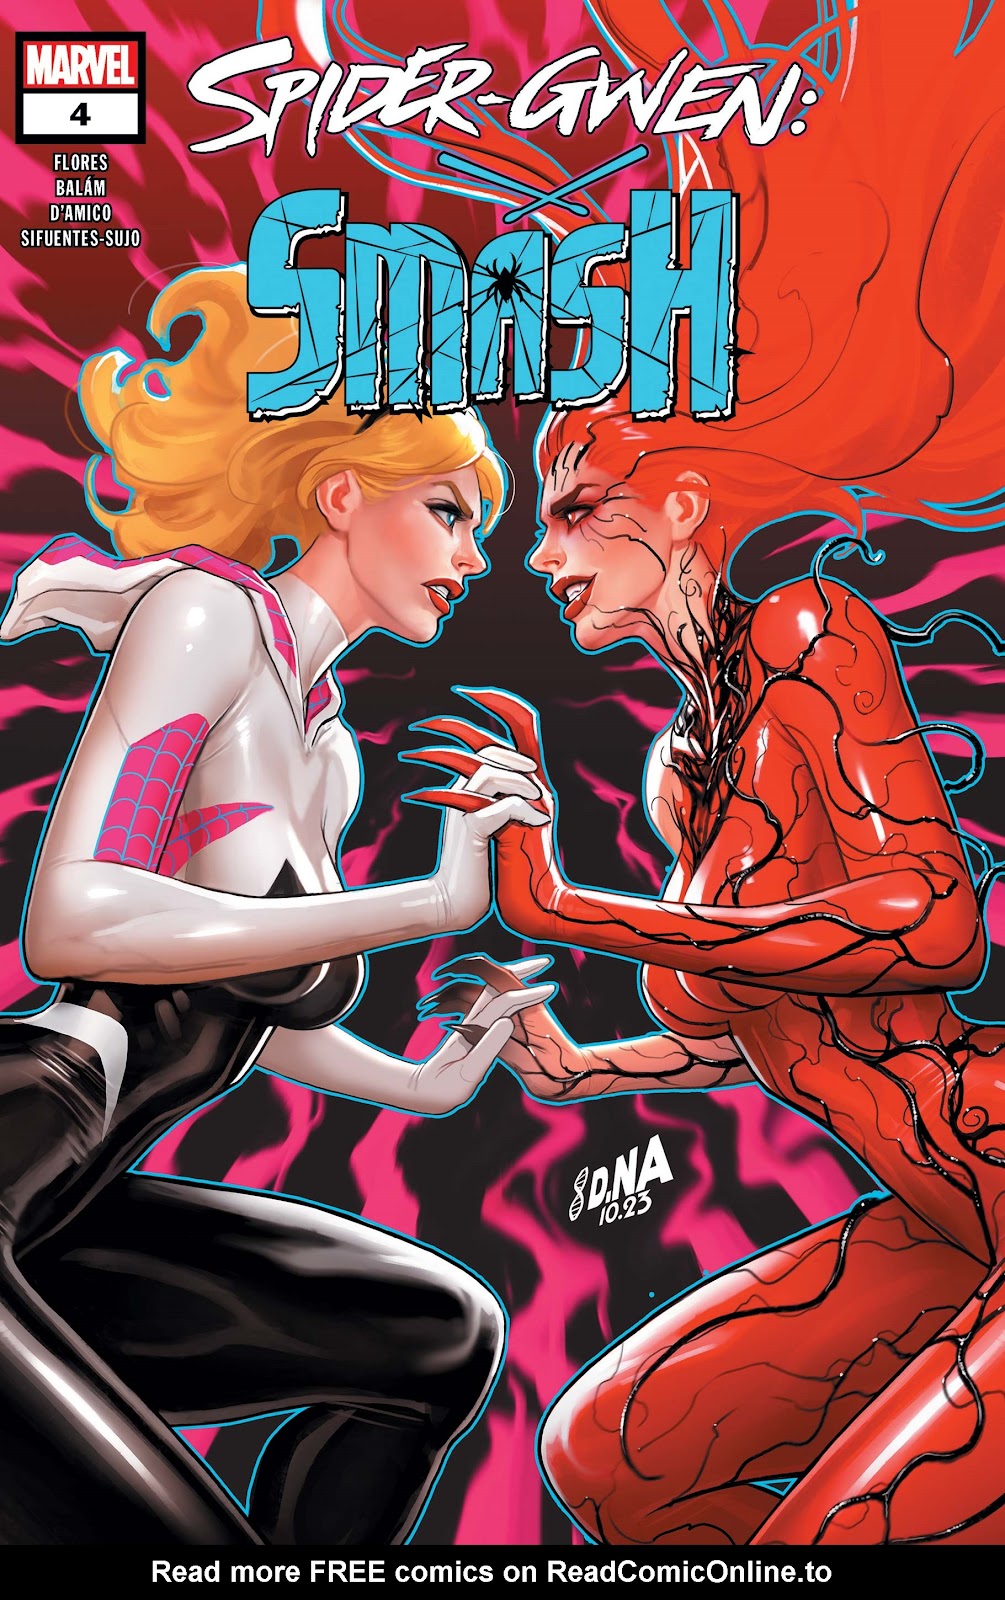 Spider-Gwen: Smash issue 4 - Page 1